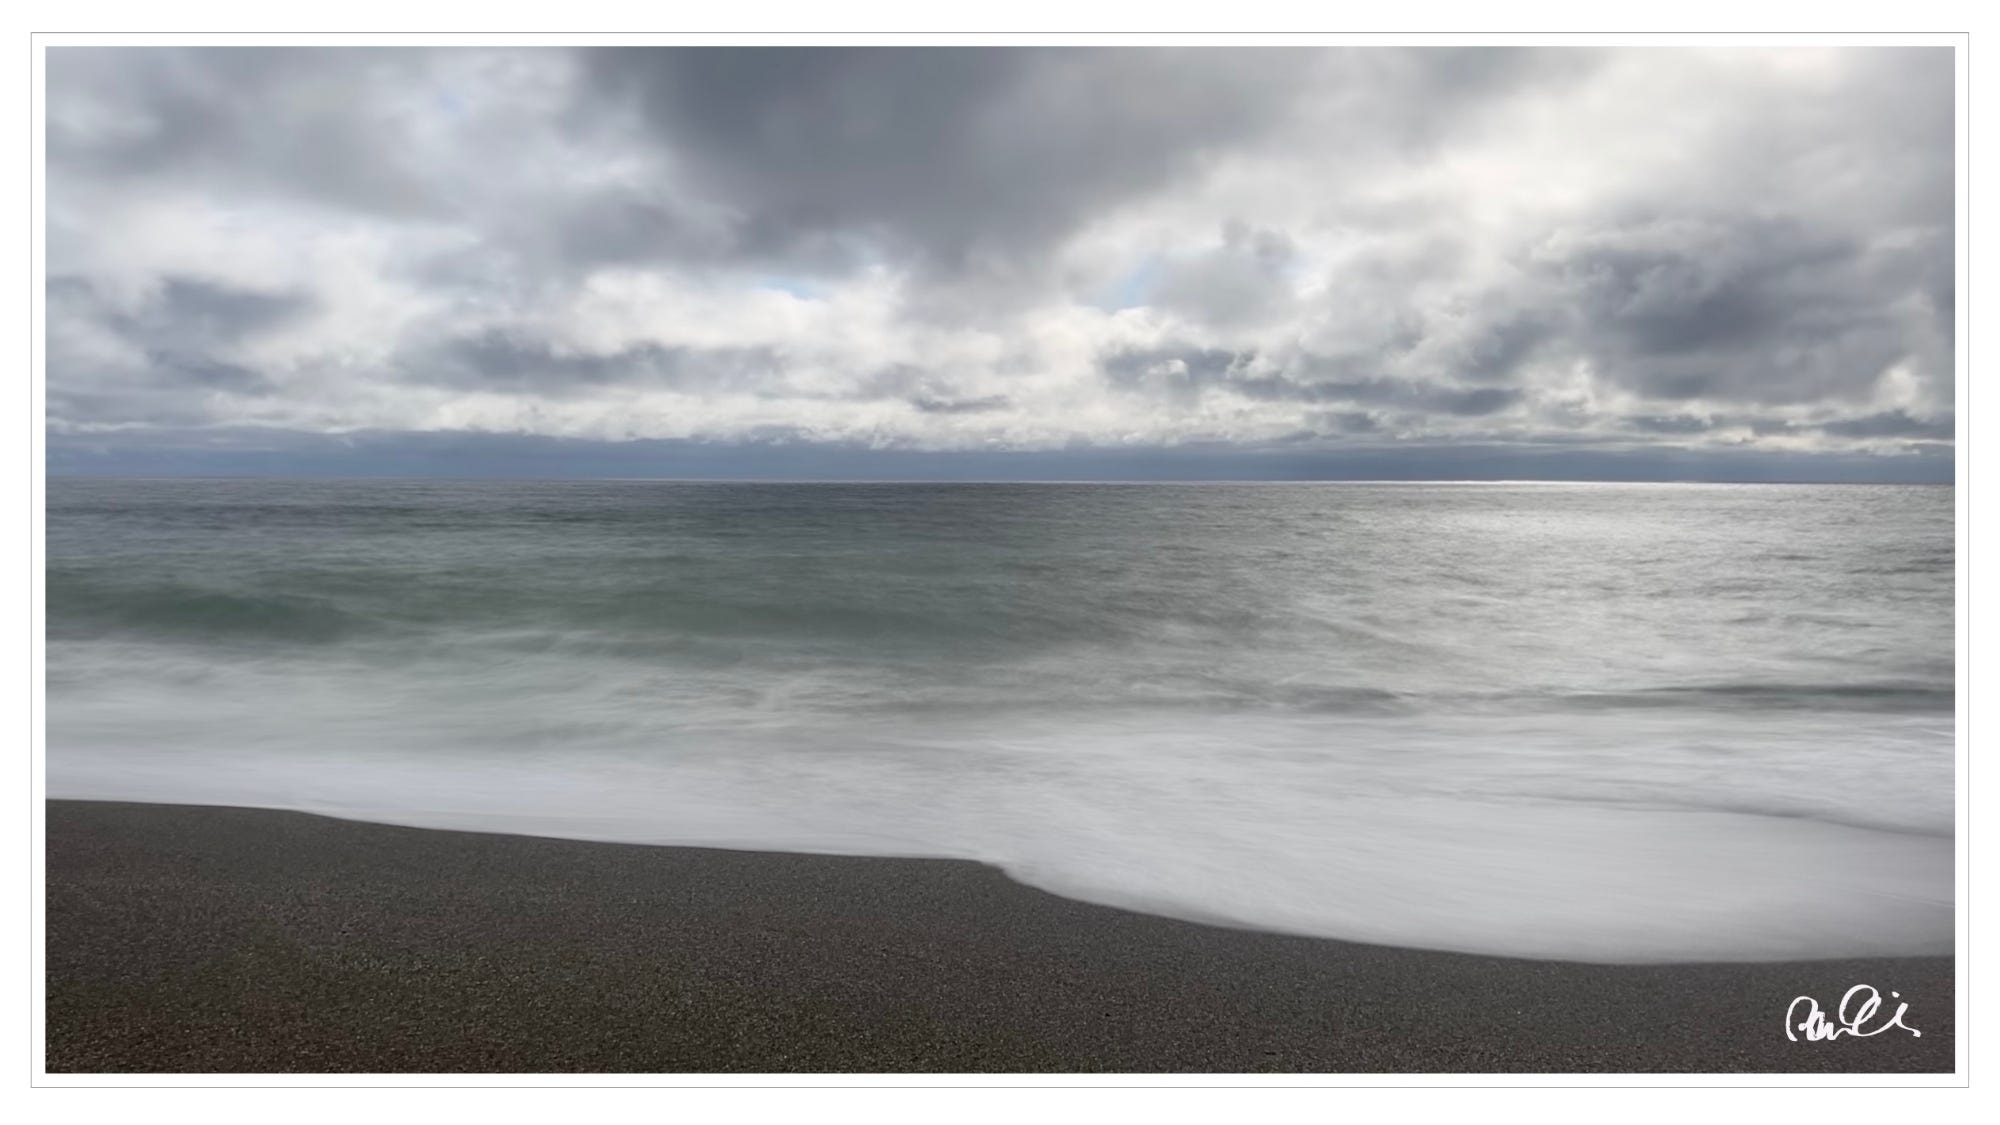 Pacific Ocean, dusk, dark clouds, long exposure